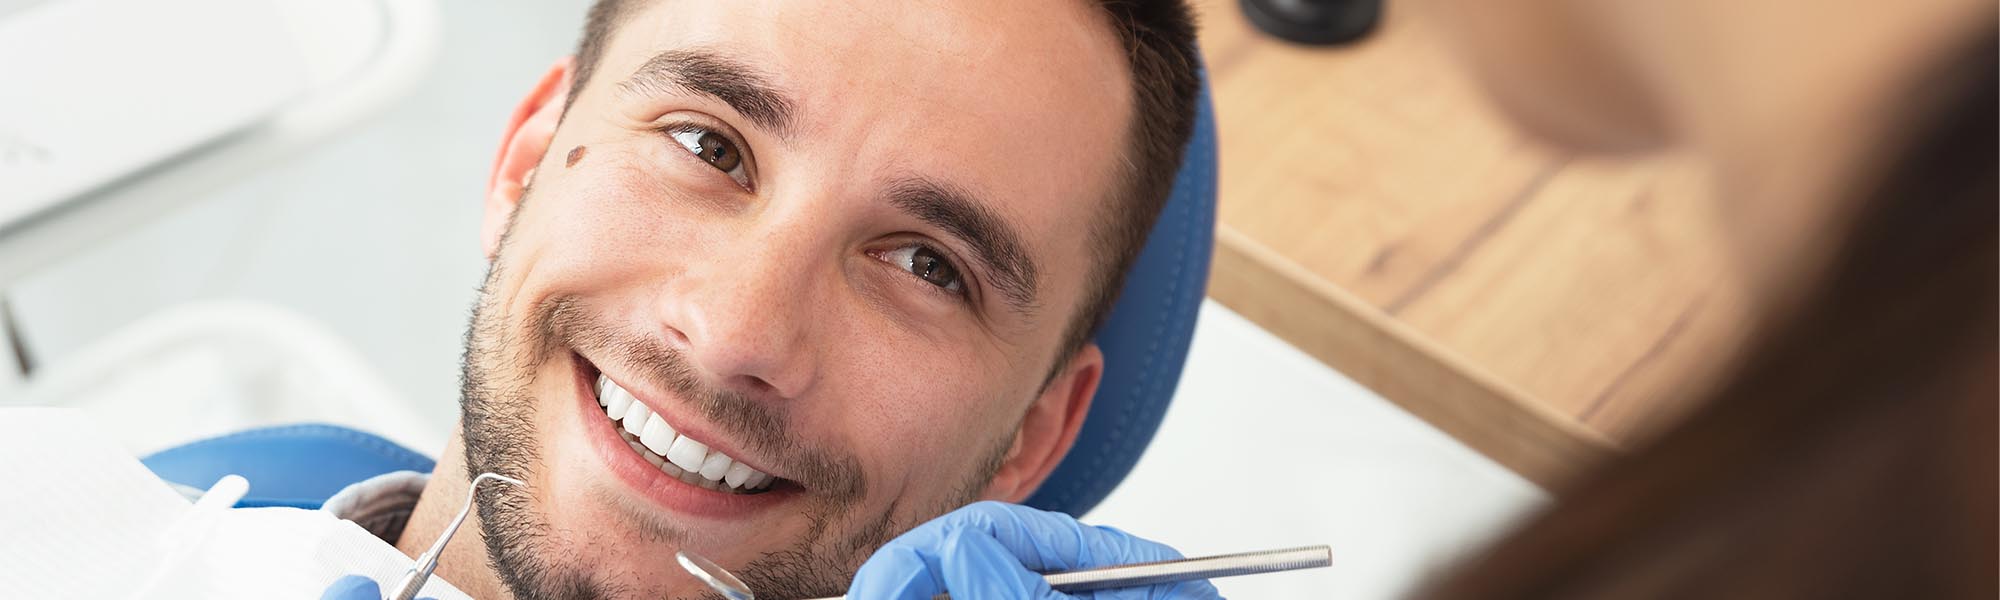 Restorative Dental Treatments in Cerritos CA